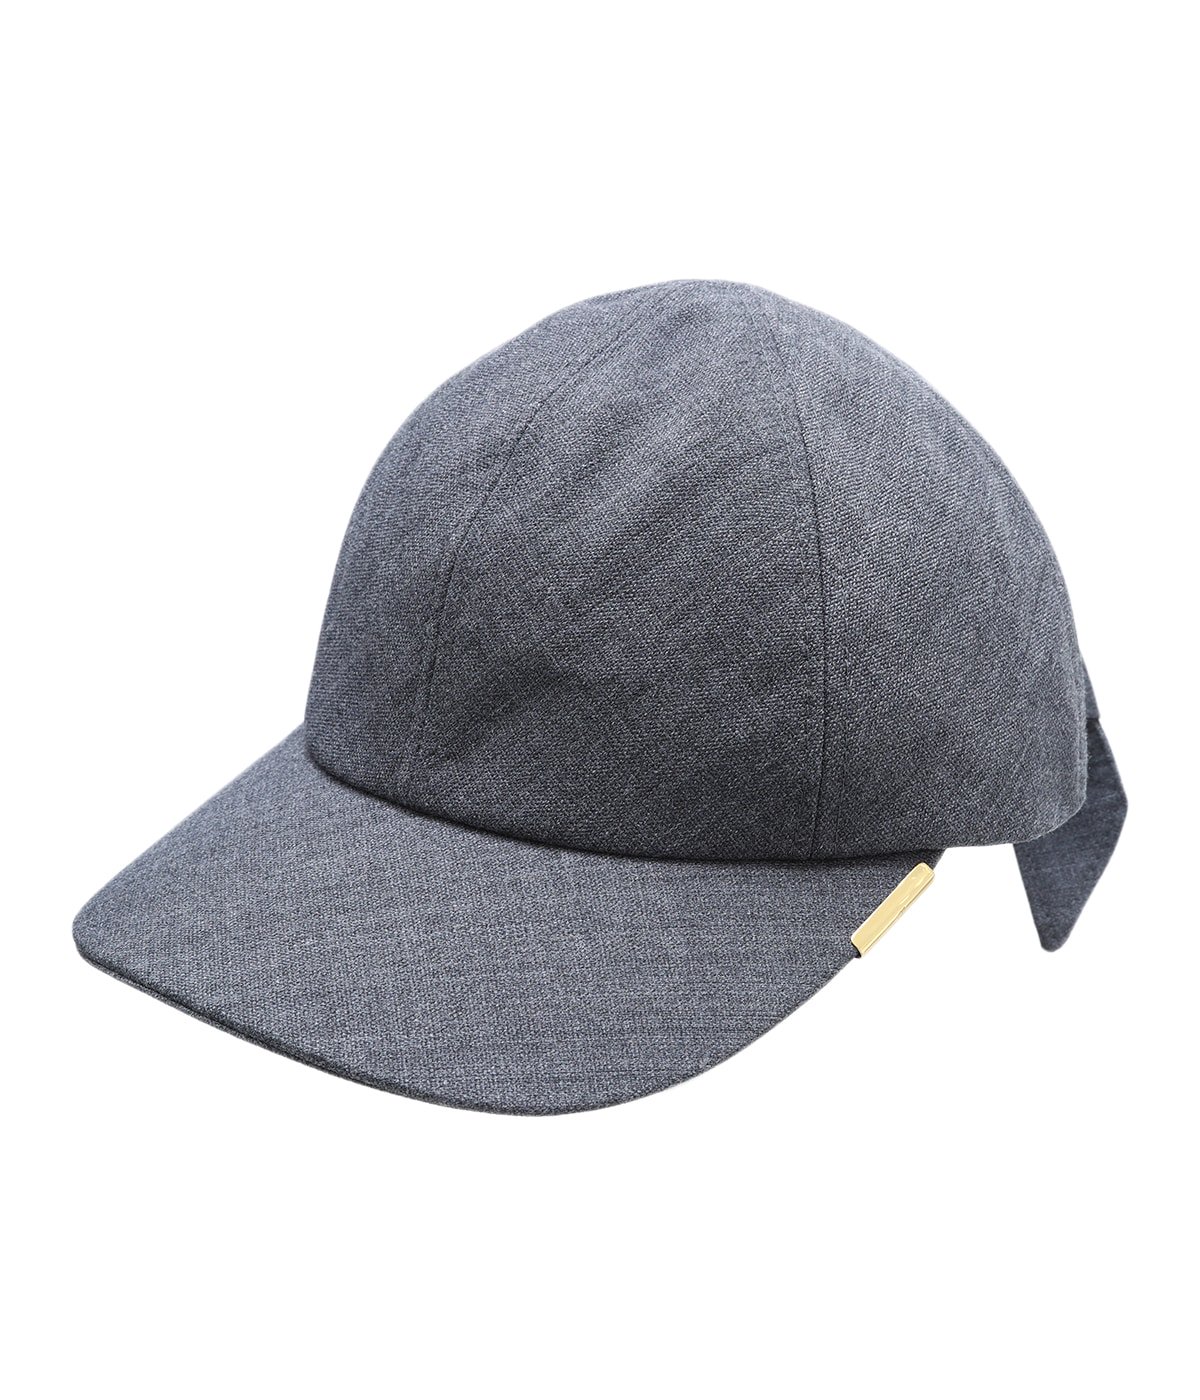 新品タグ付 定価27500円 ENTWURFEIN エントワフェインキャップ 黒 帽子 